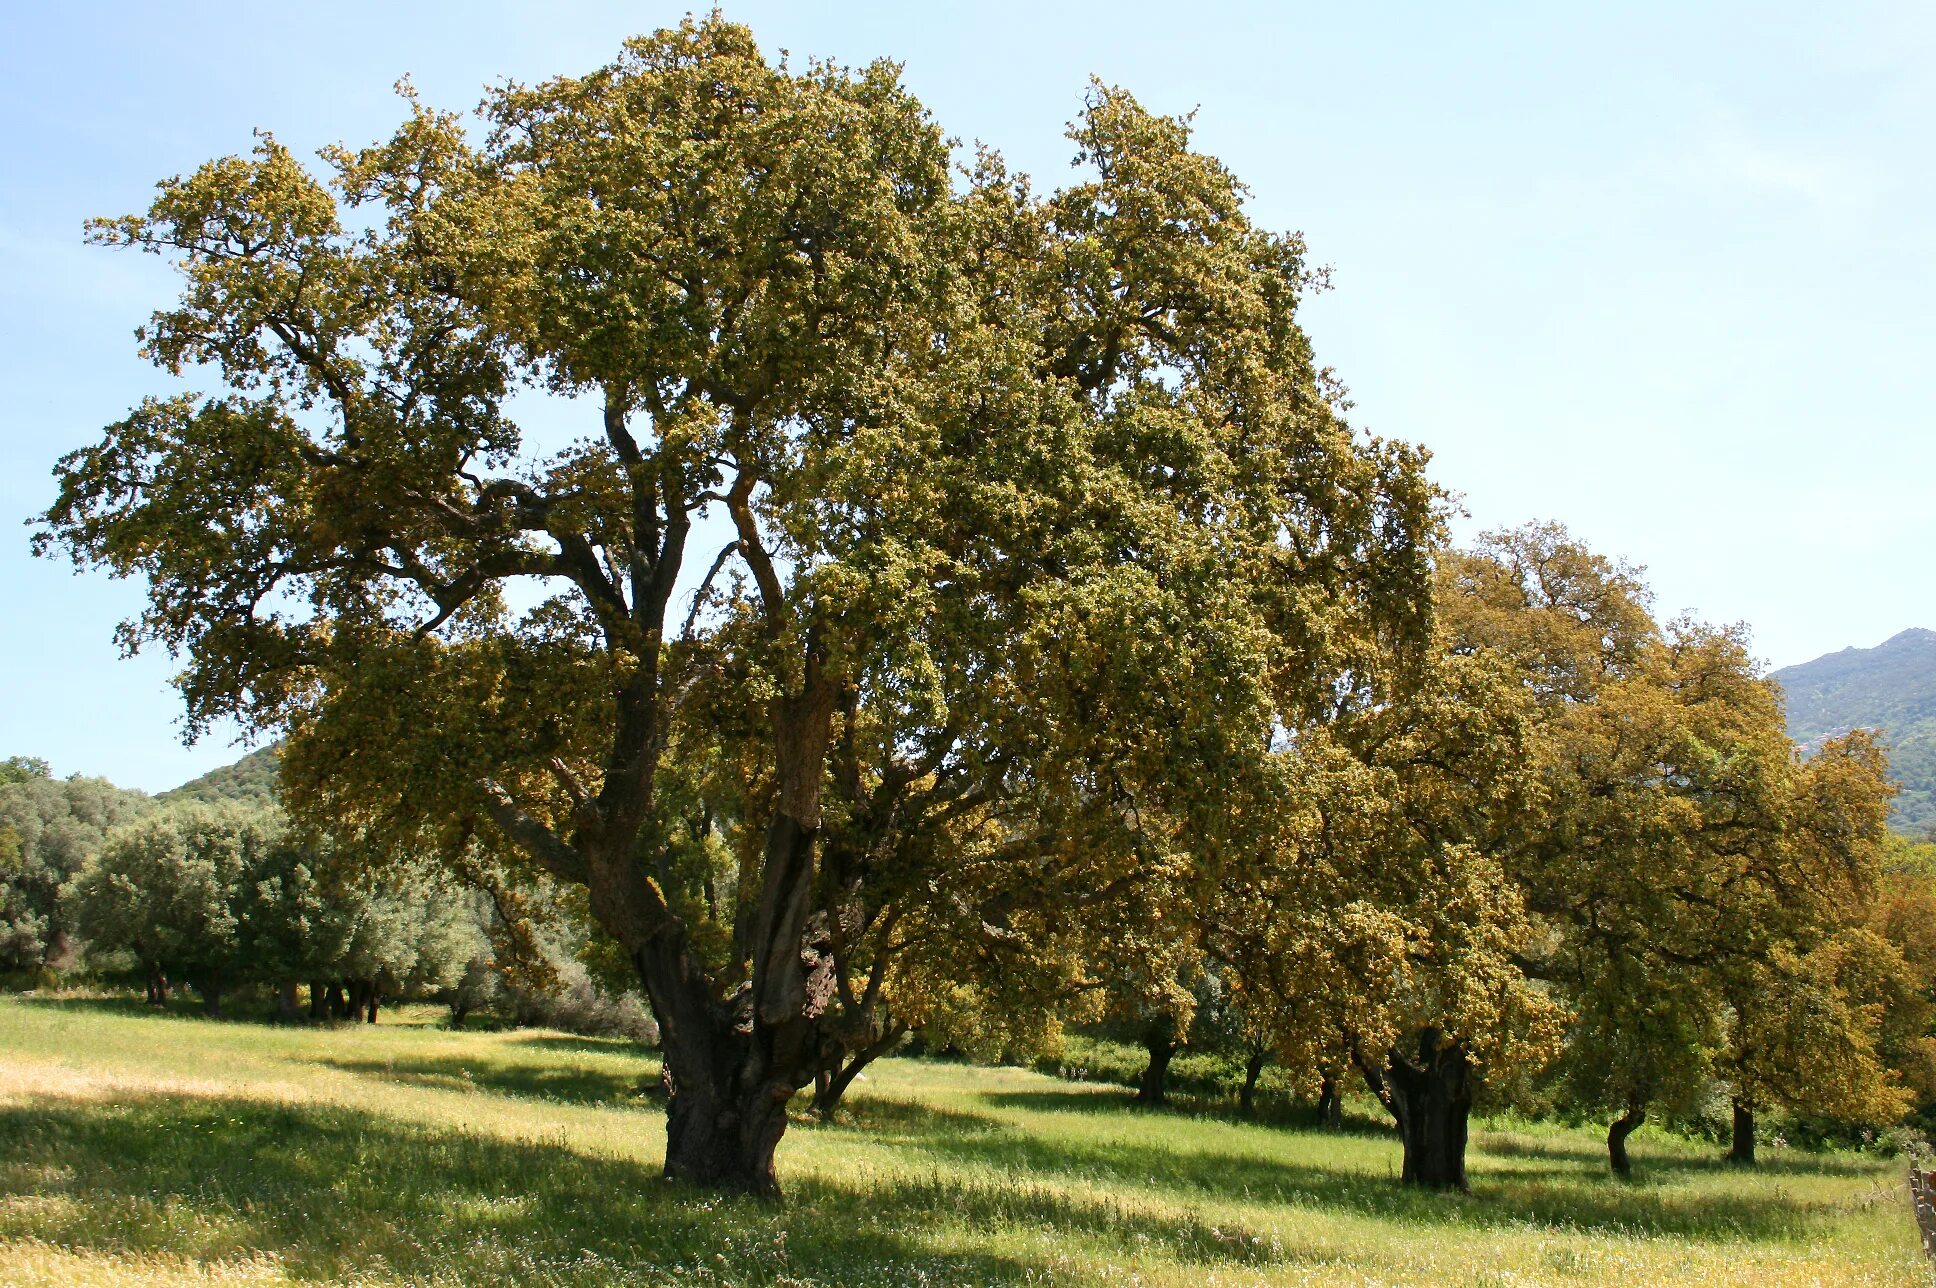 Quercus дуб пробковый. Пробковый дуб в Португалии. Вечнозеленый дуб Испании. Ветлина дерево. Культовые деревья